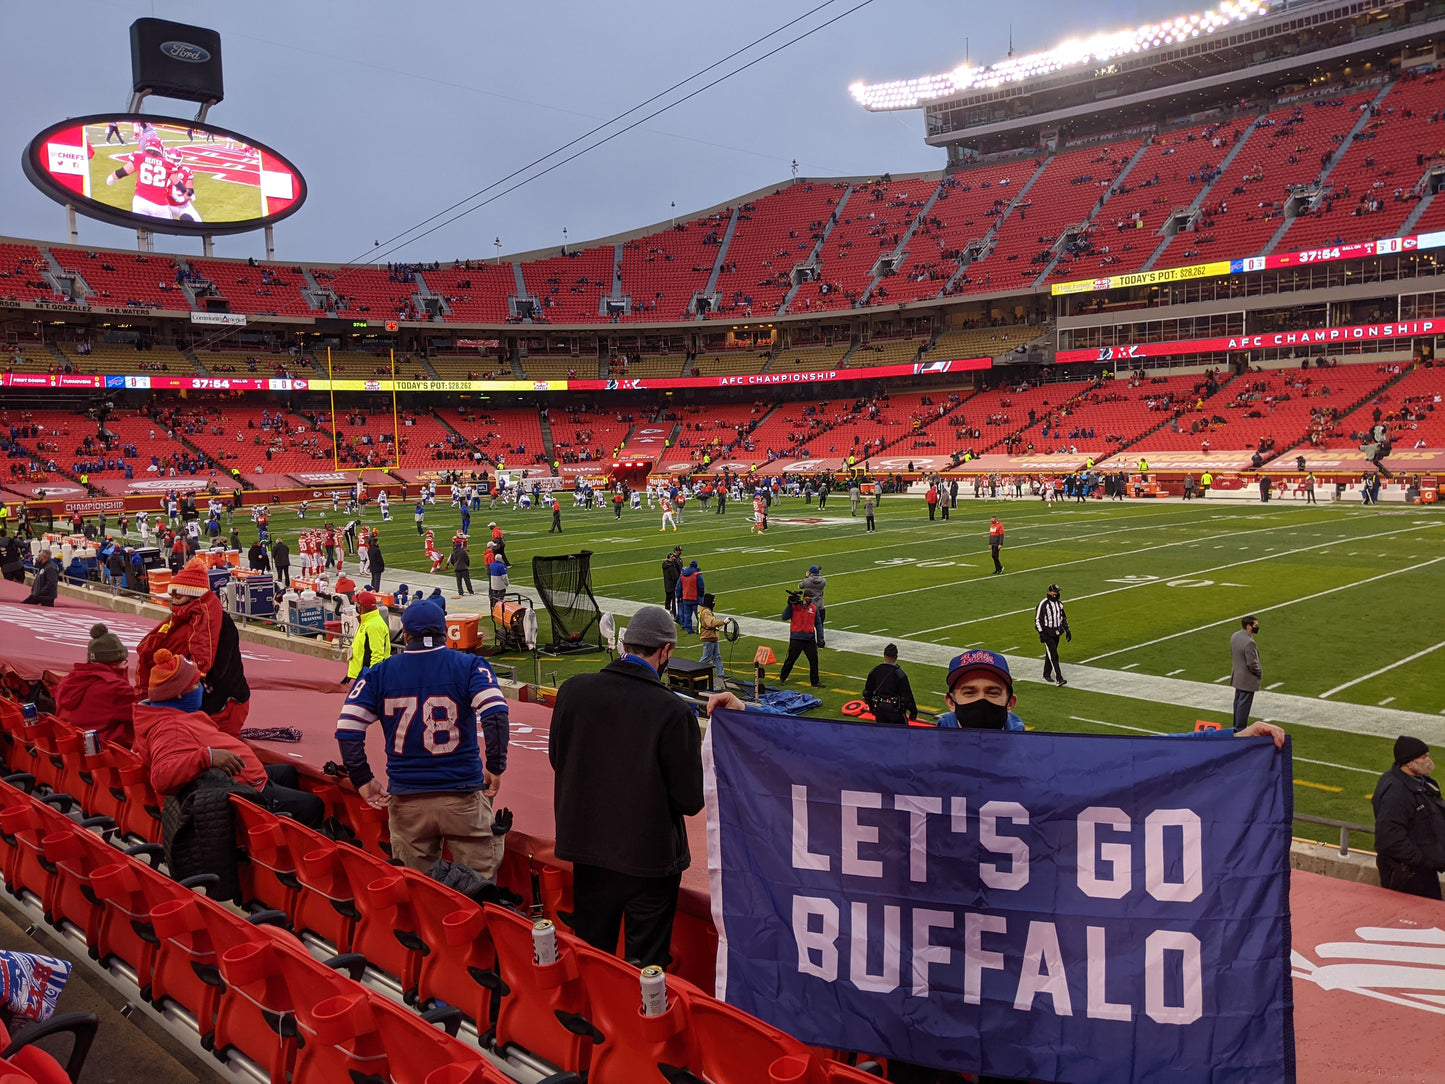 Let's Go Buffalo Outdoor Flag